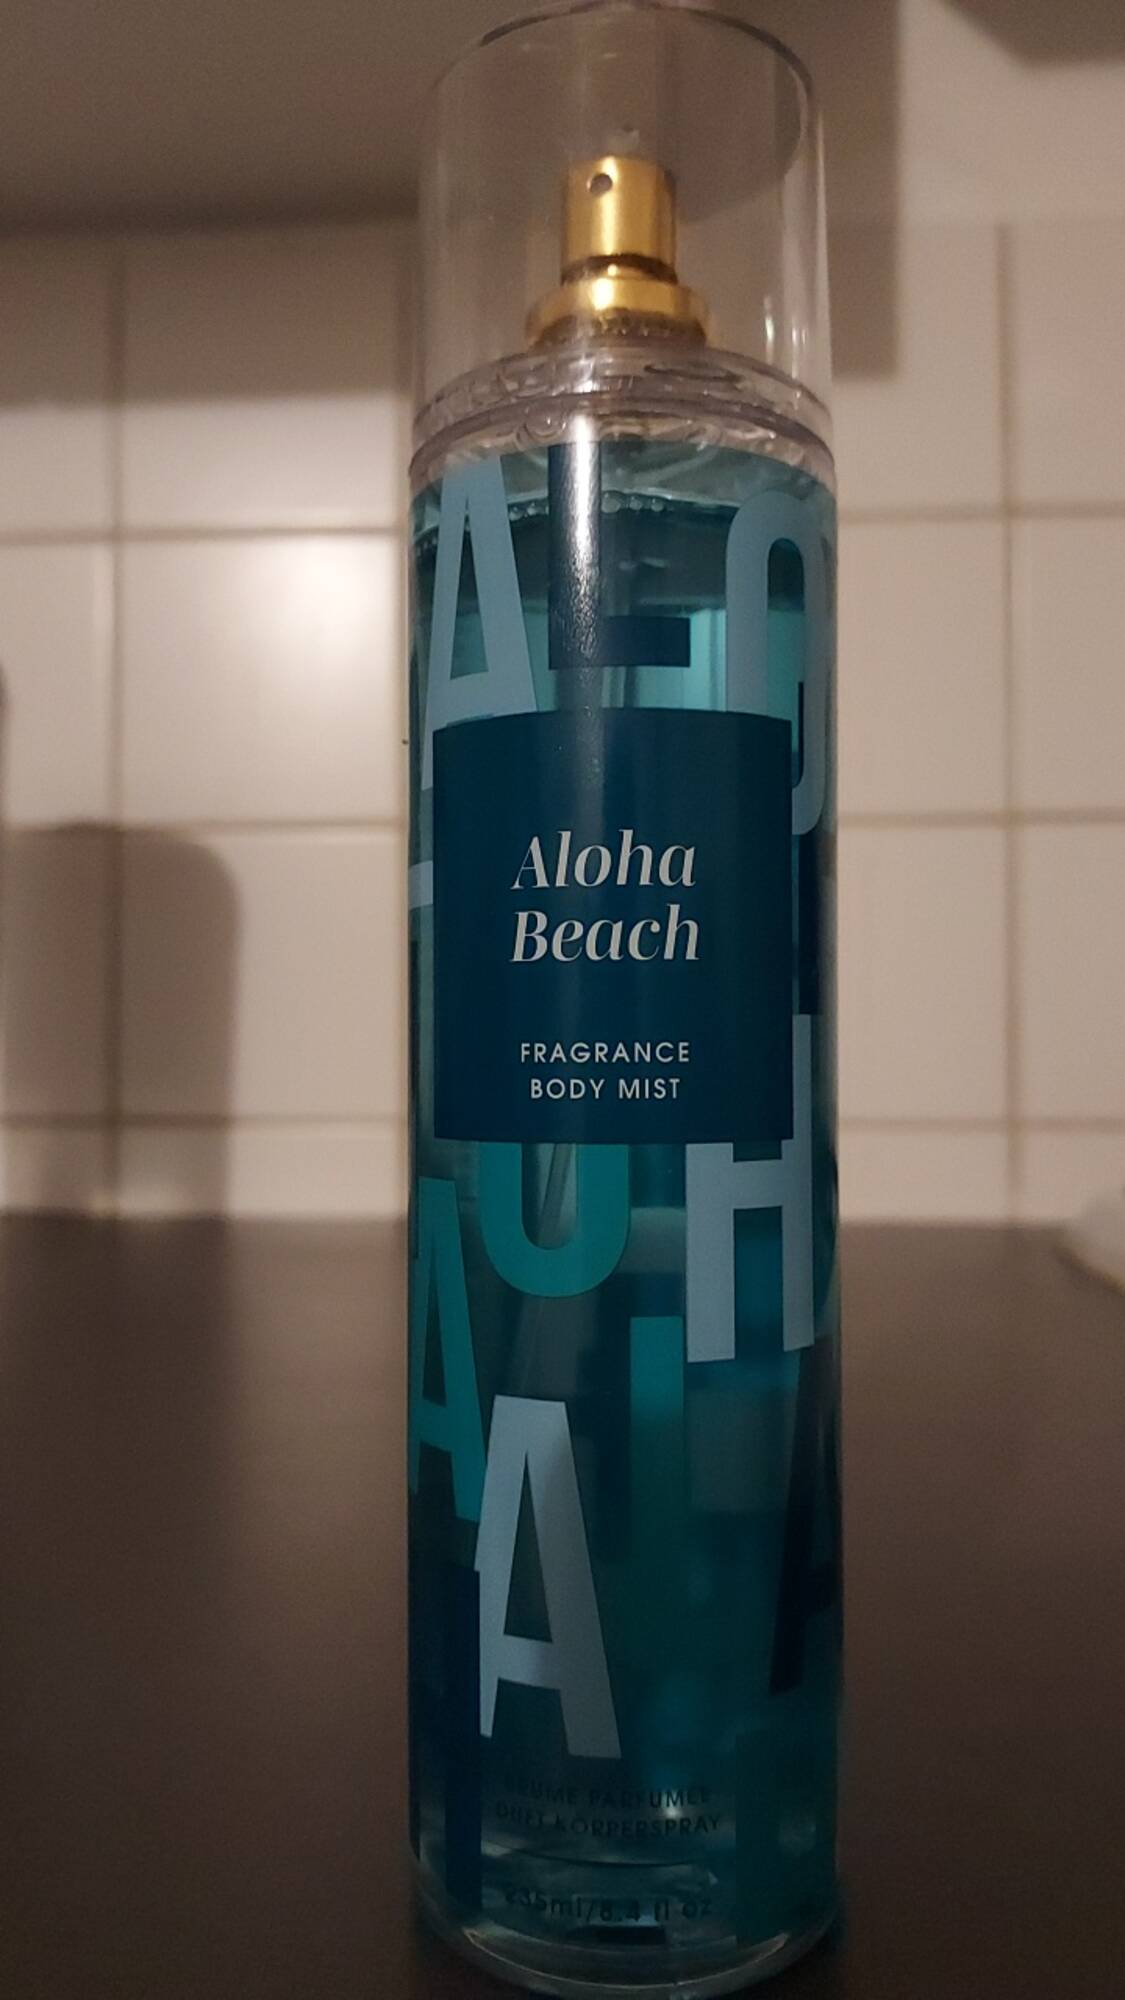 ORCHARD - Aloha beach - Fragrance body mist